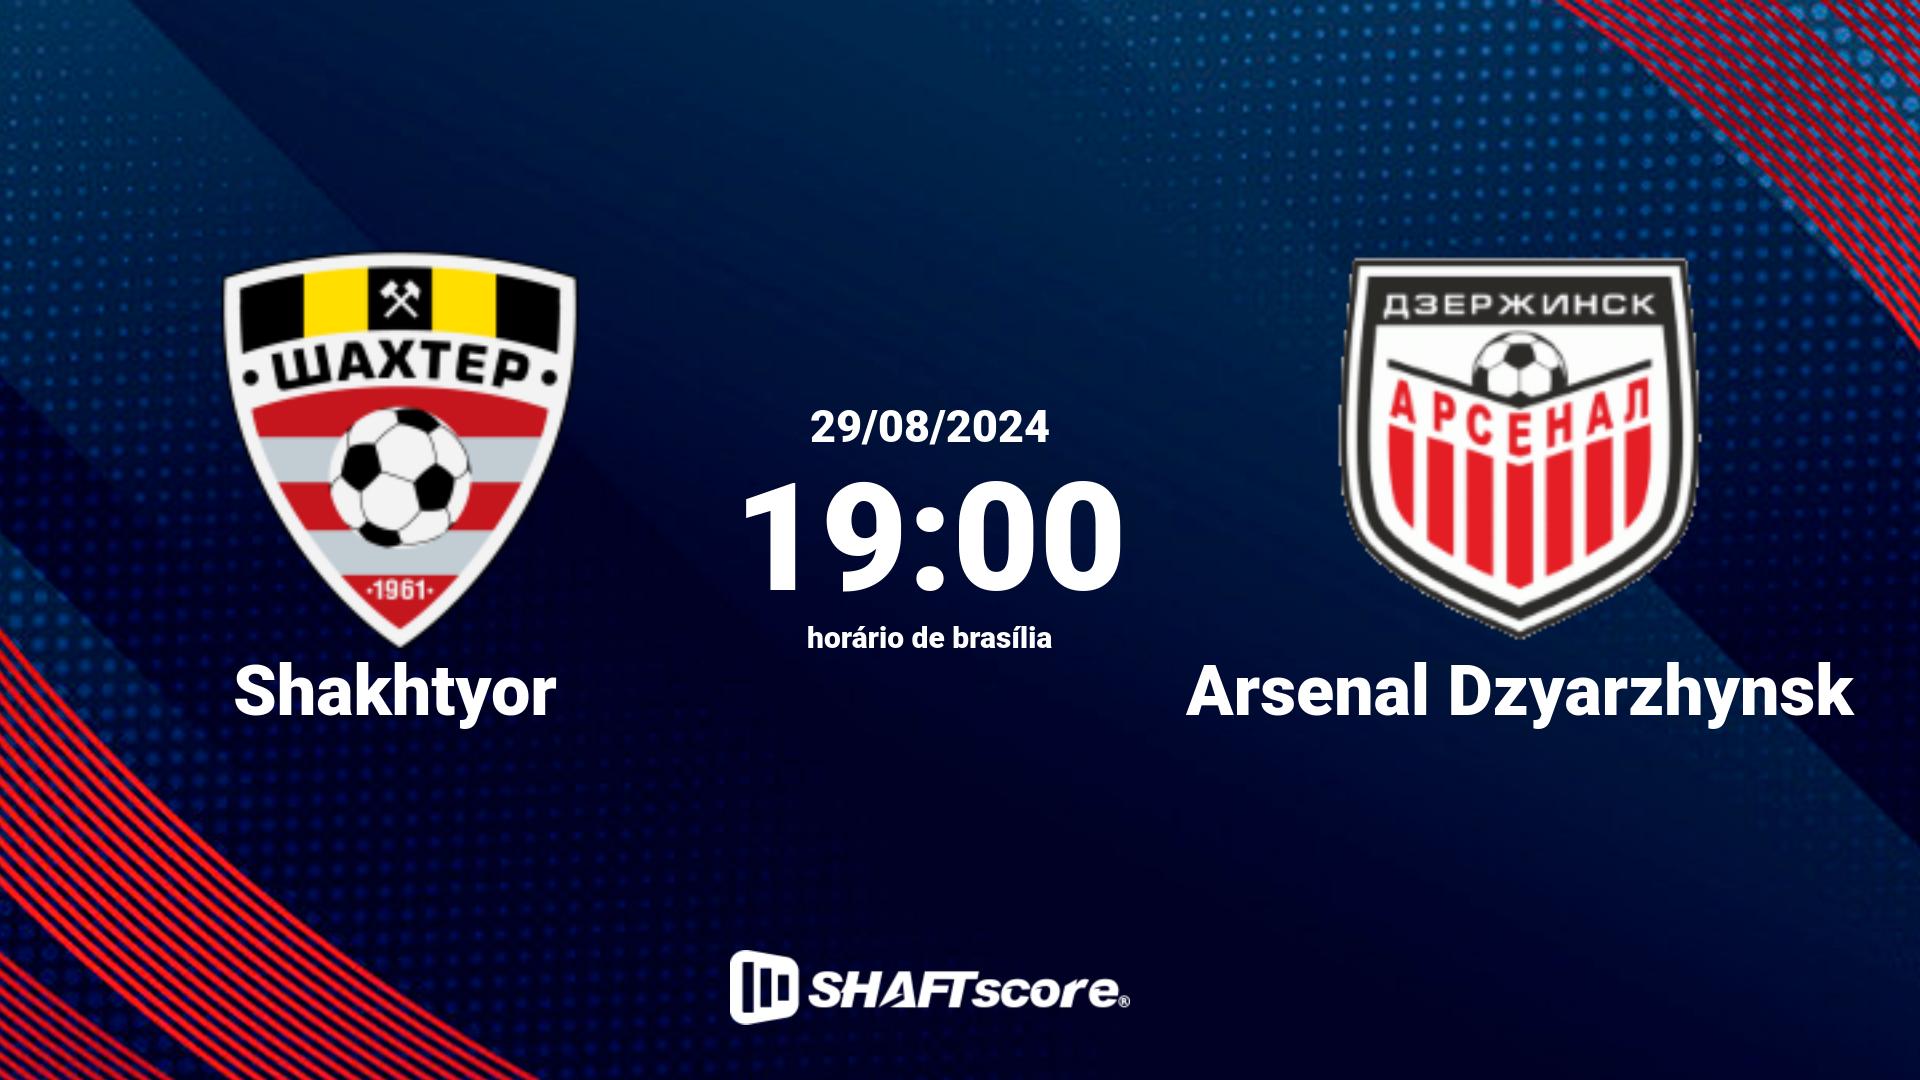 Estatísticas do jogo Shakhtyor vs Arsenal Dzyarzhynsk 29.08 19:00